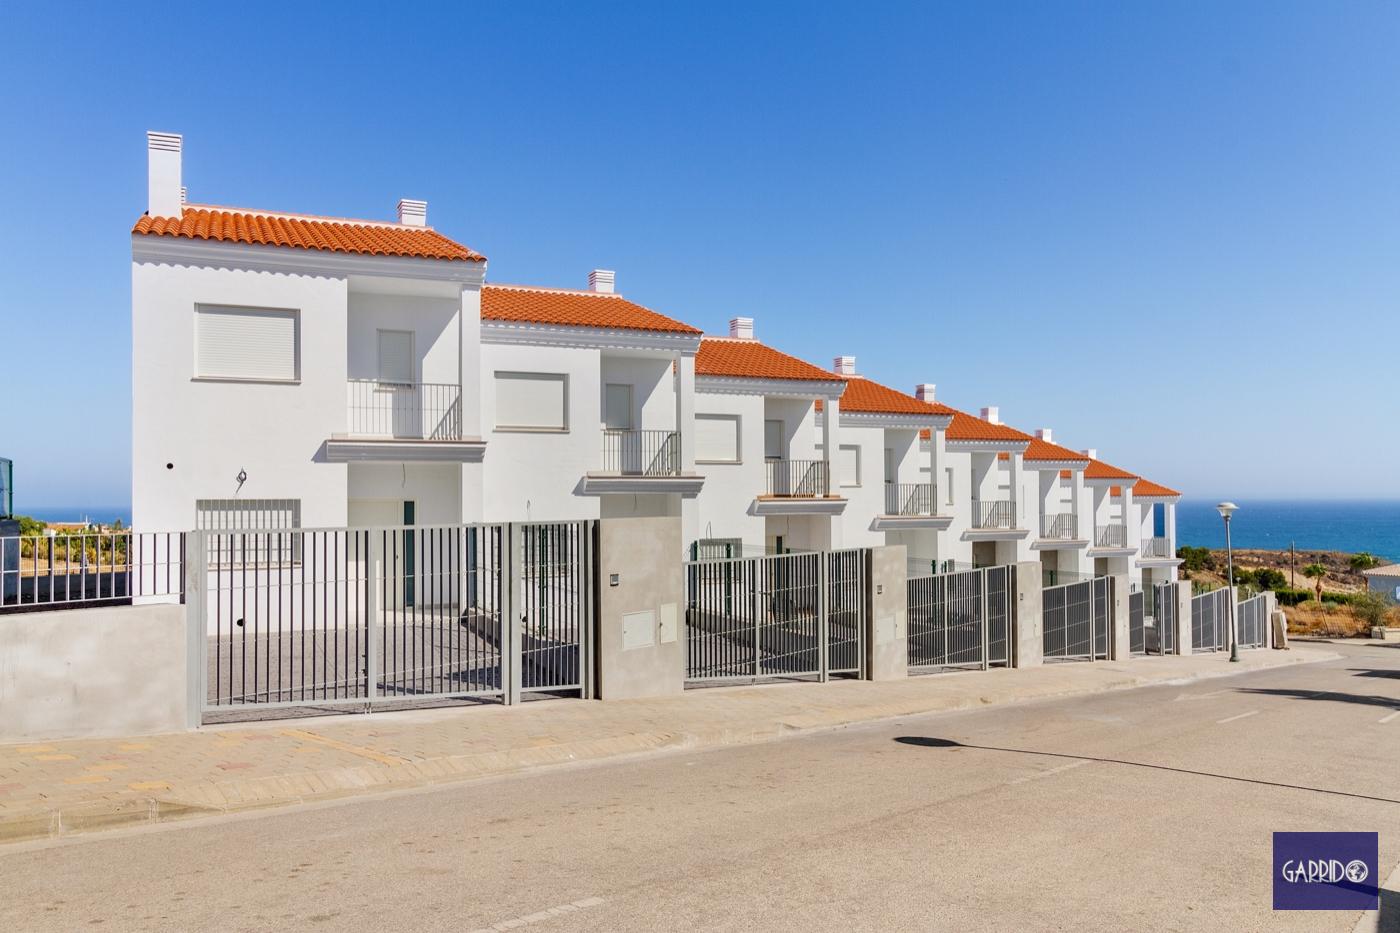 Hus till salu ej färdigställd i Torre del Mar, 214.500 (Ref.: Mirador Beach)